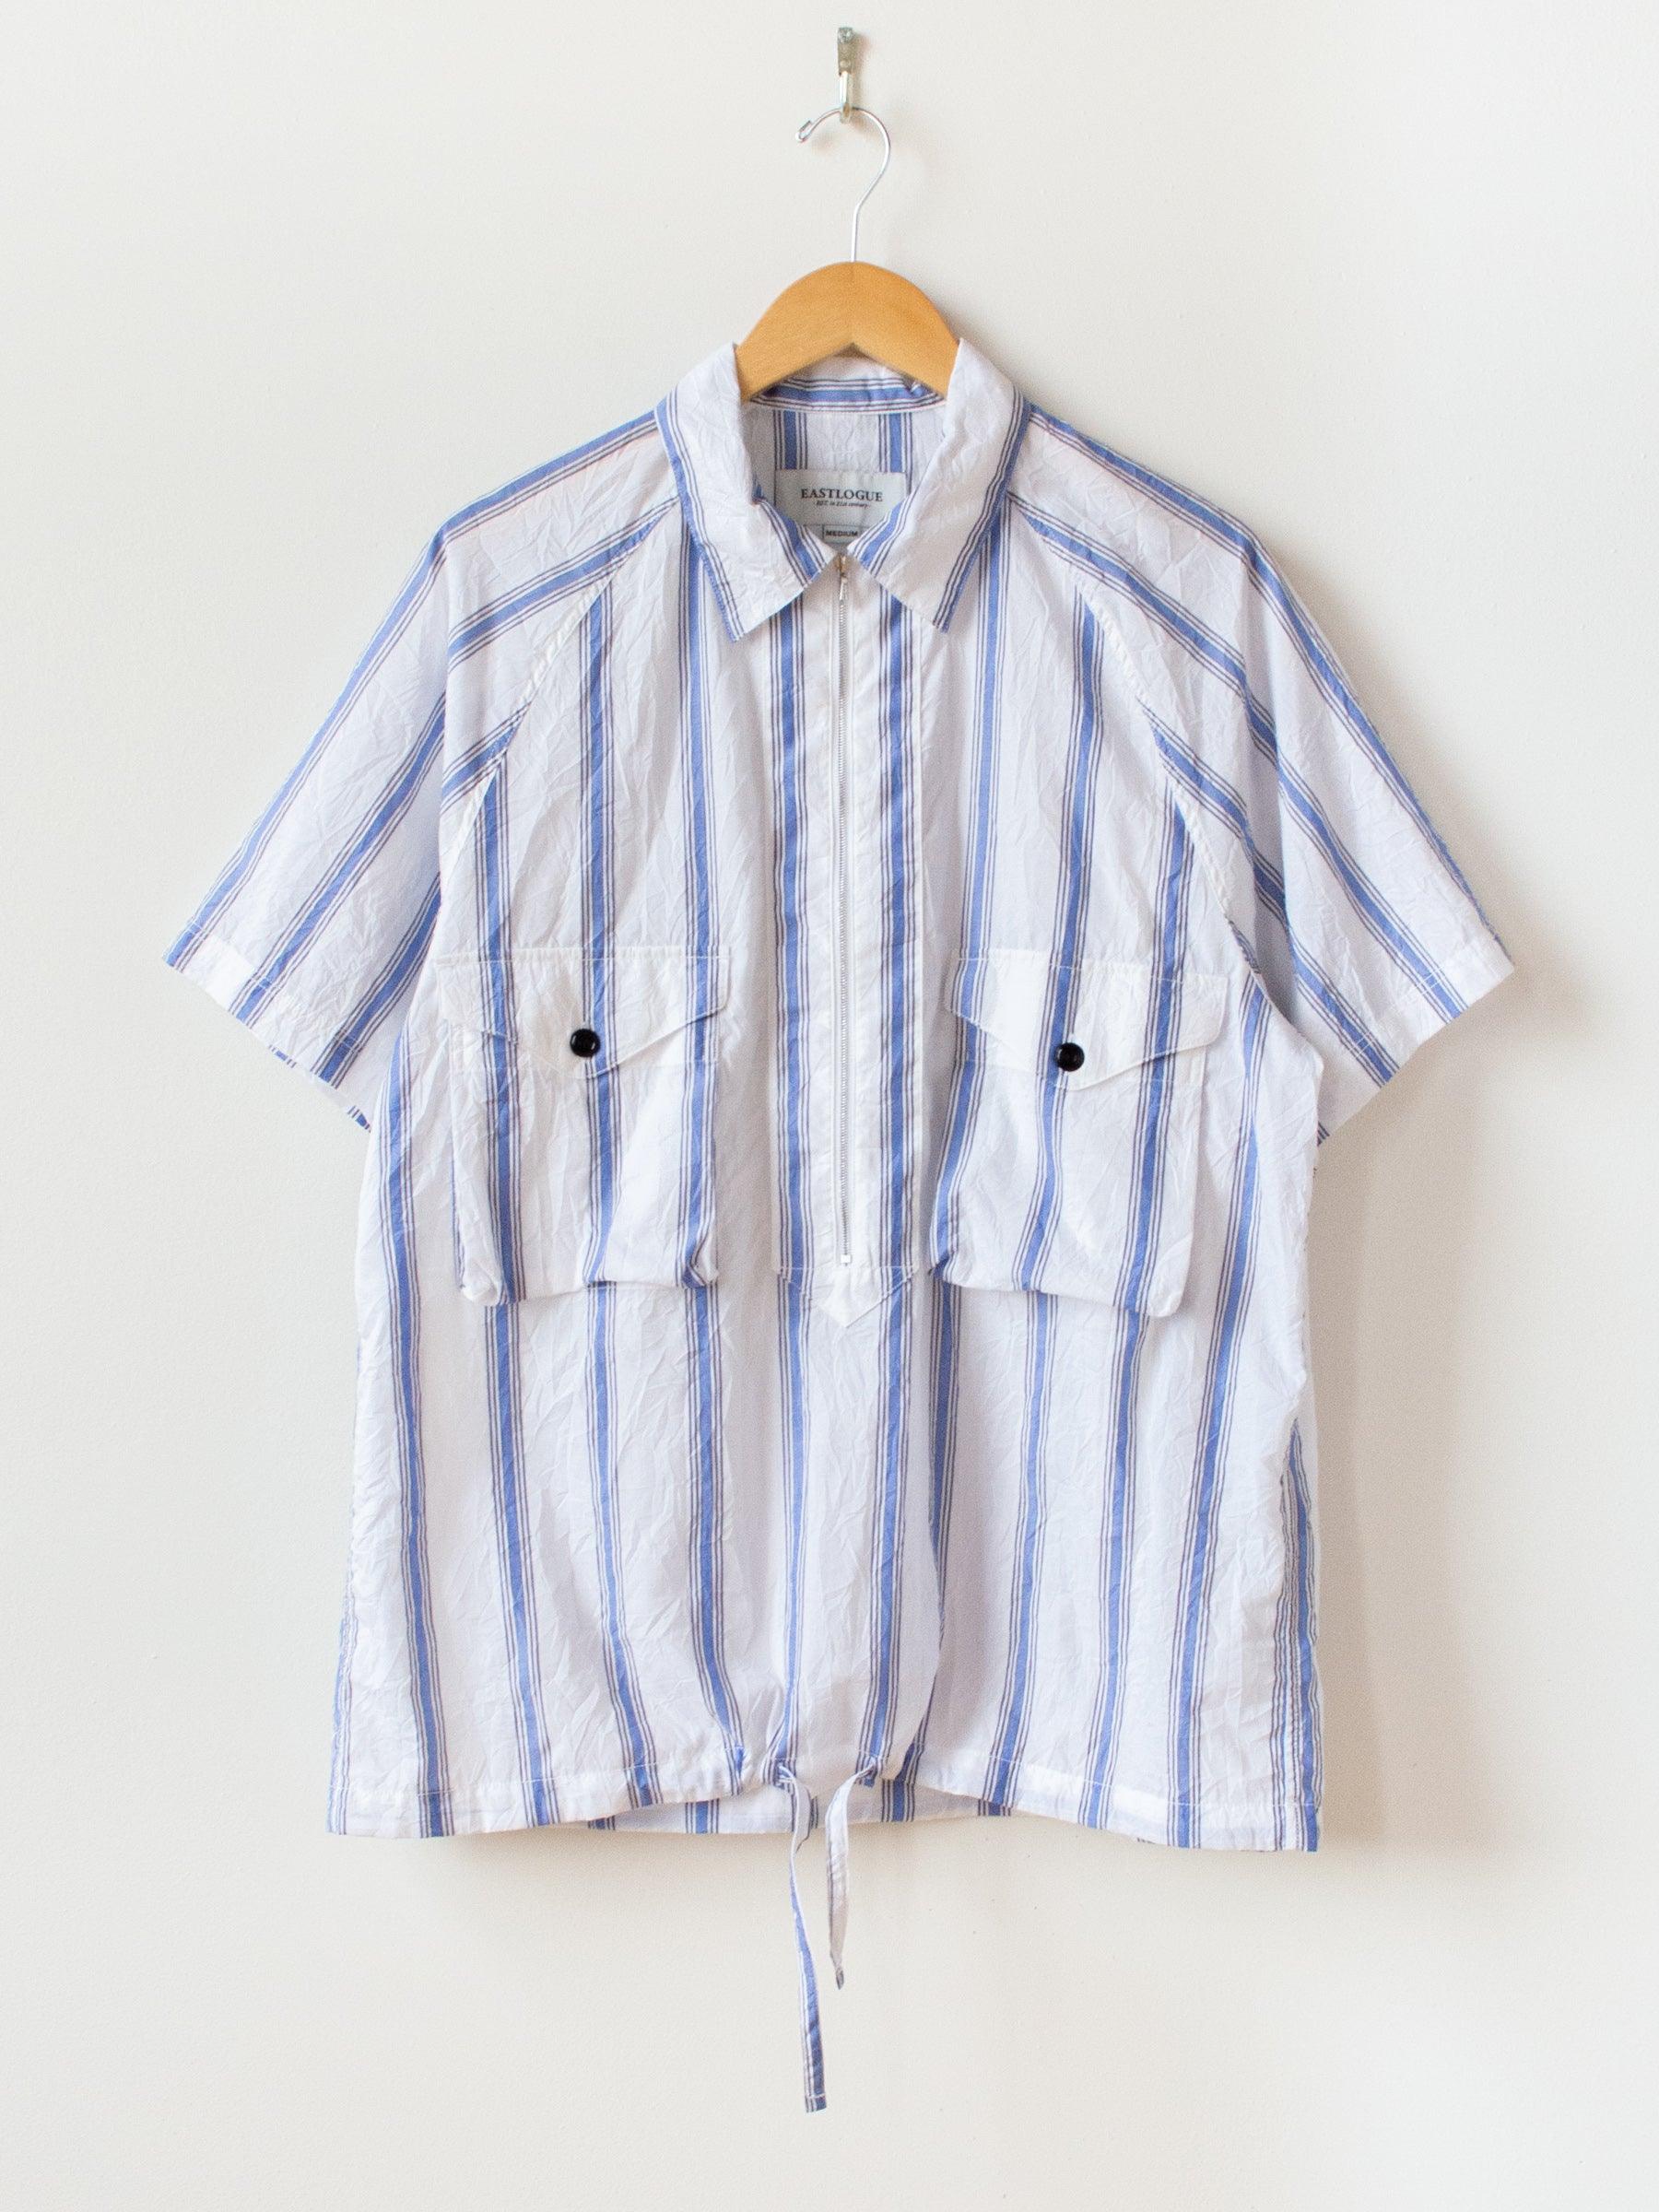 Namu Shop - Eastlogue Scout Pullover Half Shirt - Crinkle Blue Stripe